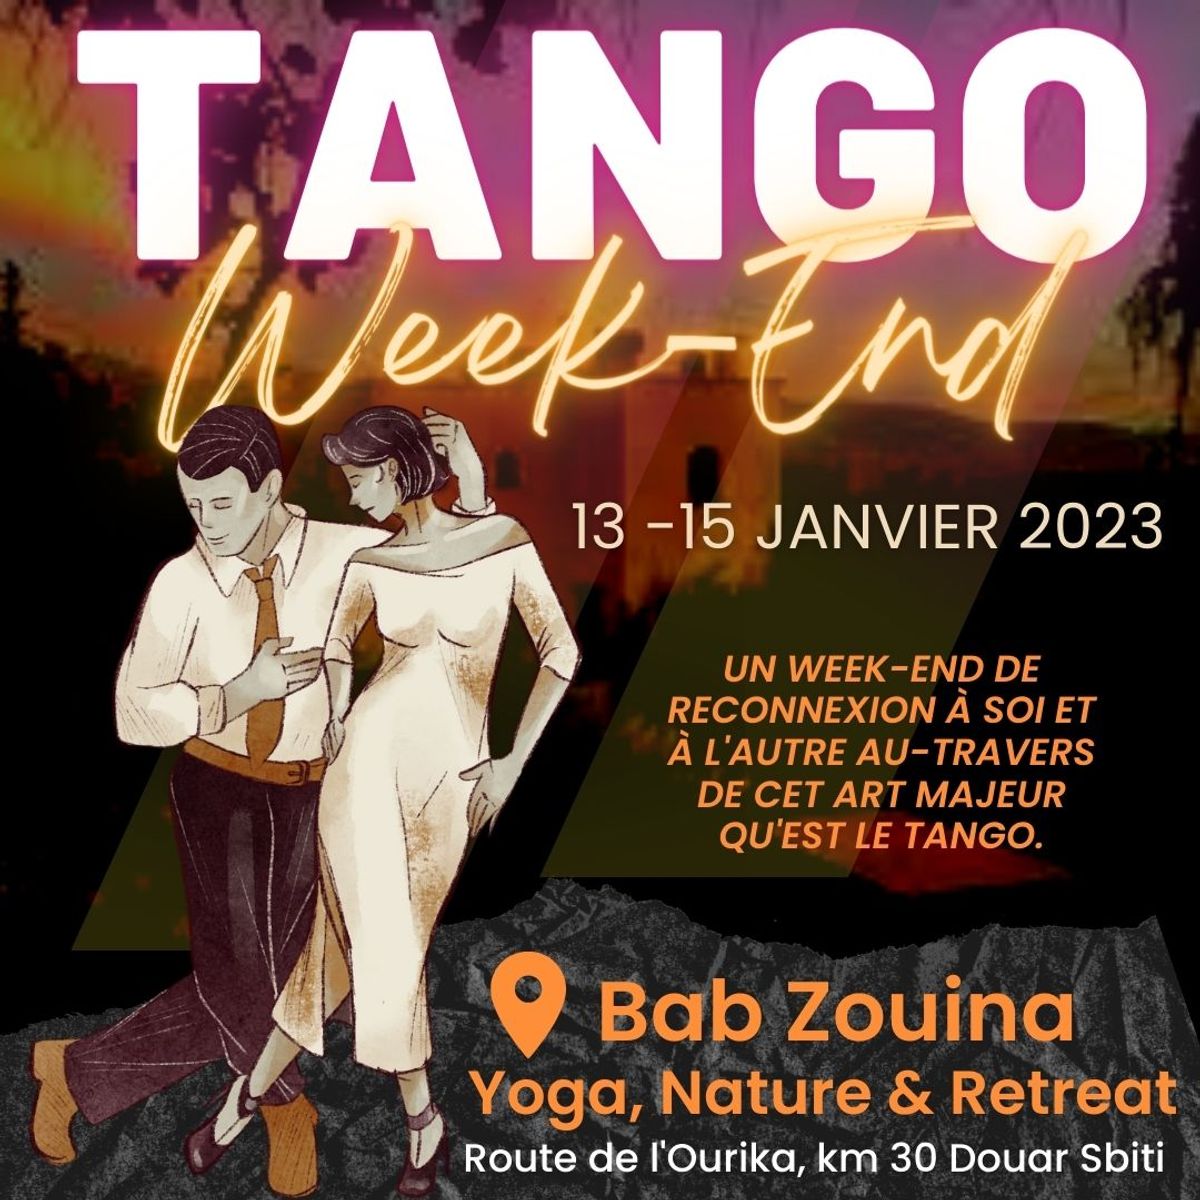 Tango Week-end @ Bab Zouina (Ourika) du vendredi 13 au dimanche 15 janvier